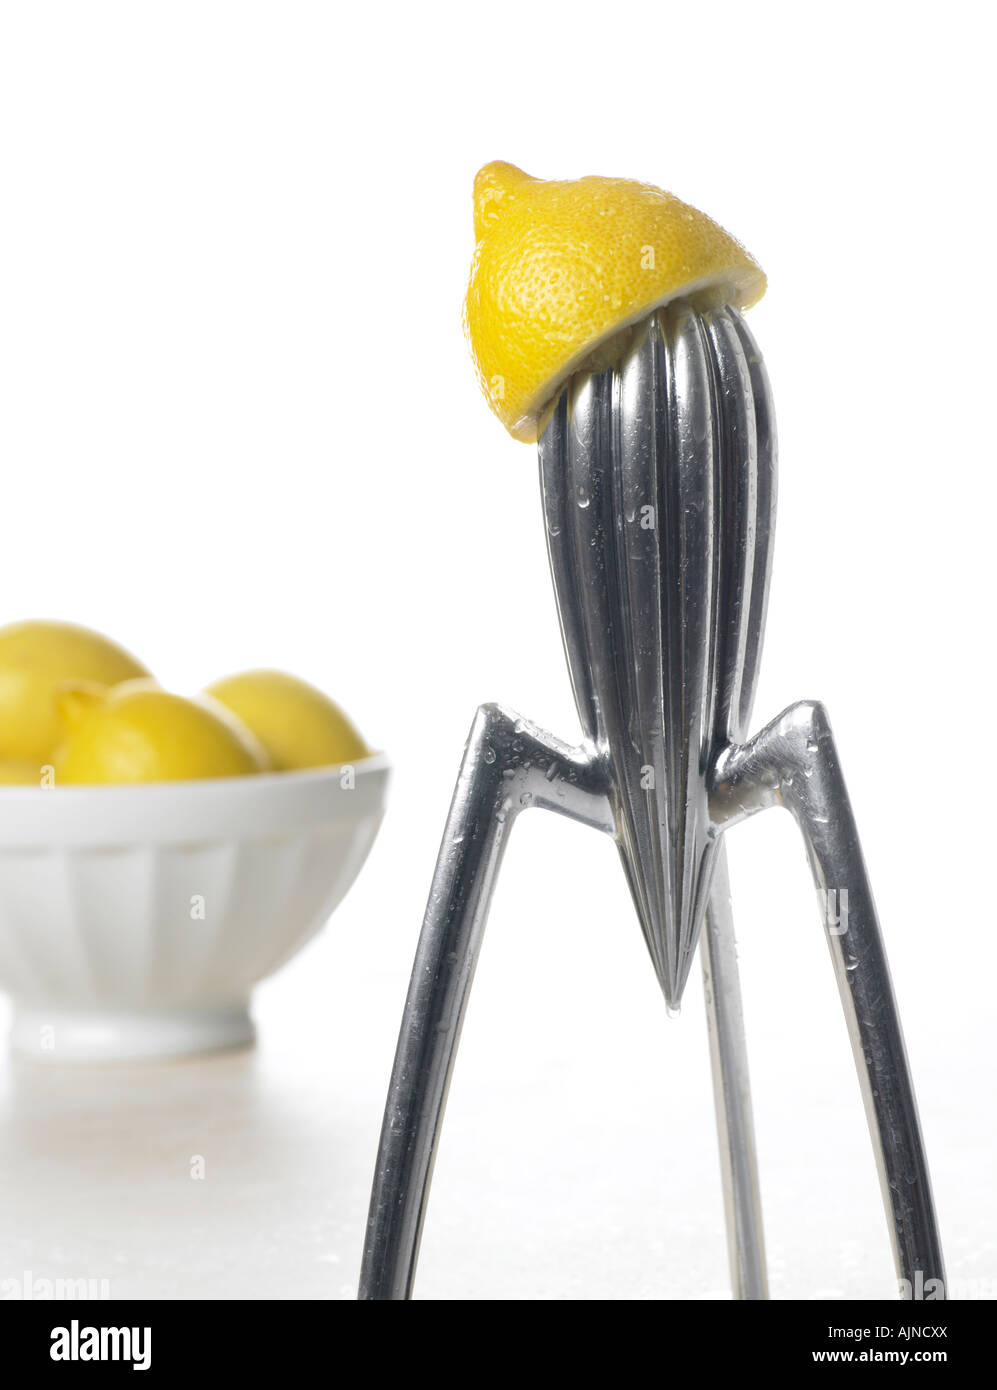 Zitrone-Entsafter mit Schale der Zitronen Stockfotografie - Alamy